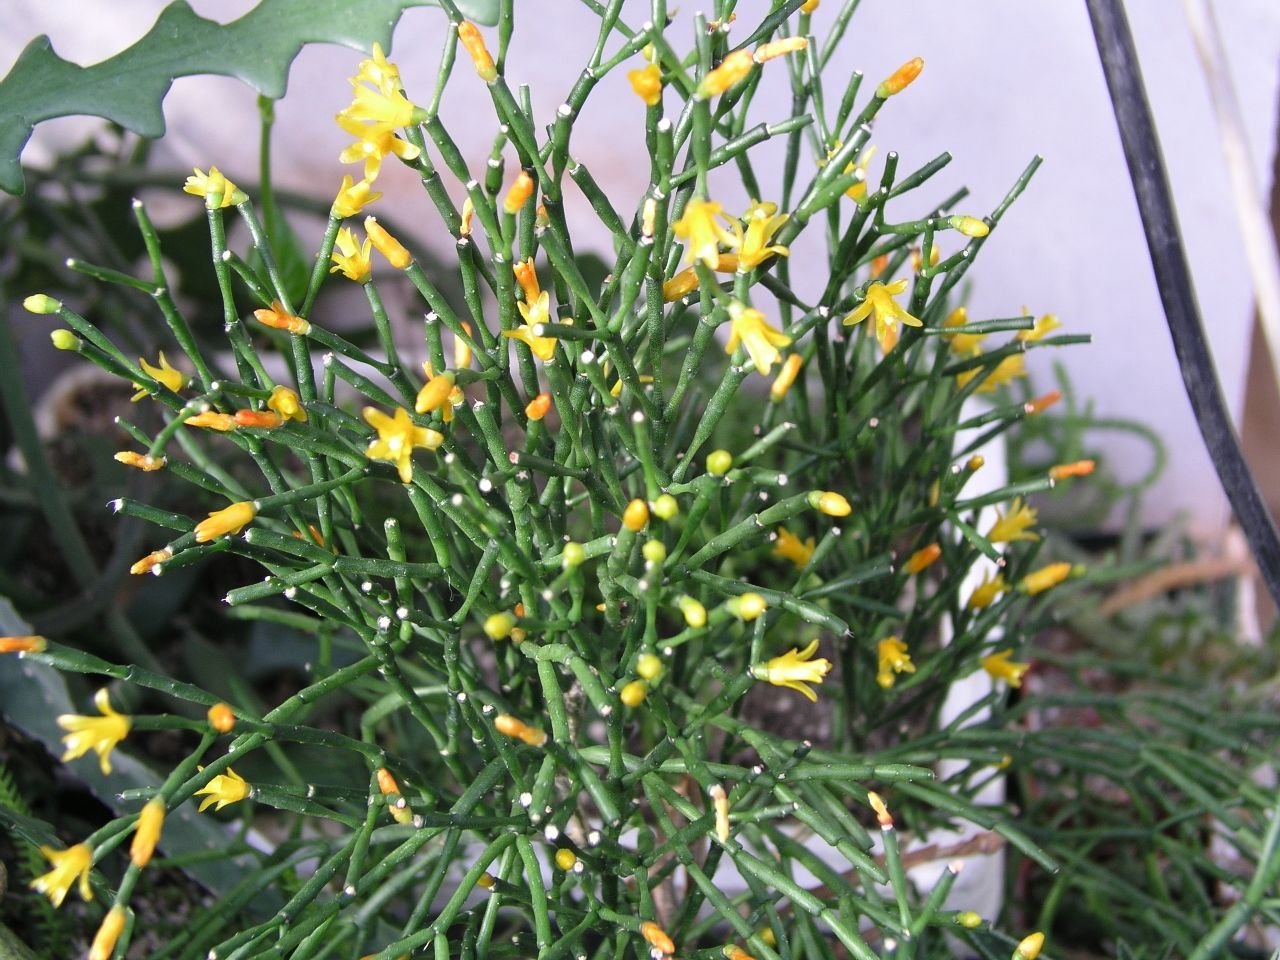 Комнатный цветок цветет желтыми цветами. Хатиора солеросовая. Цветок хатиора солеросовая. Хатиора солянковидная Hatiora salicornioides. Хатиора Оленьи рожки.